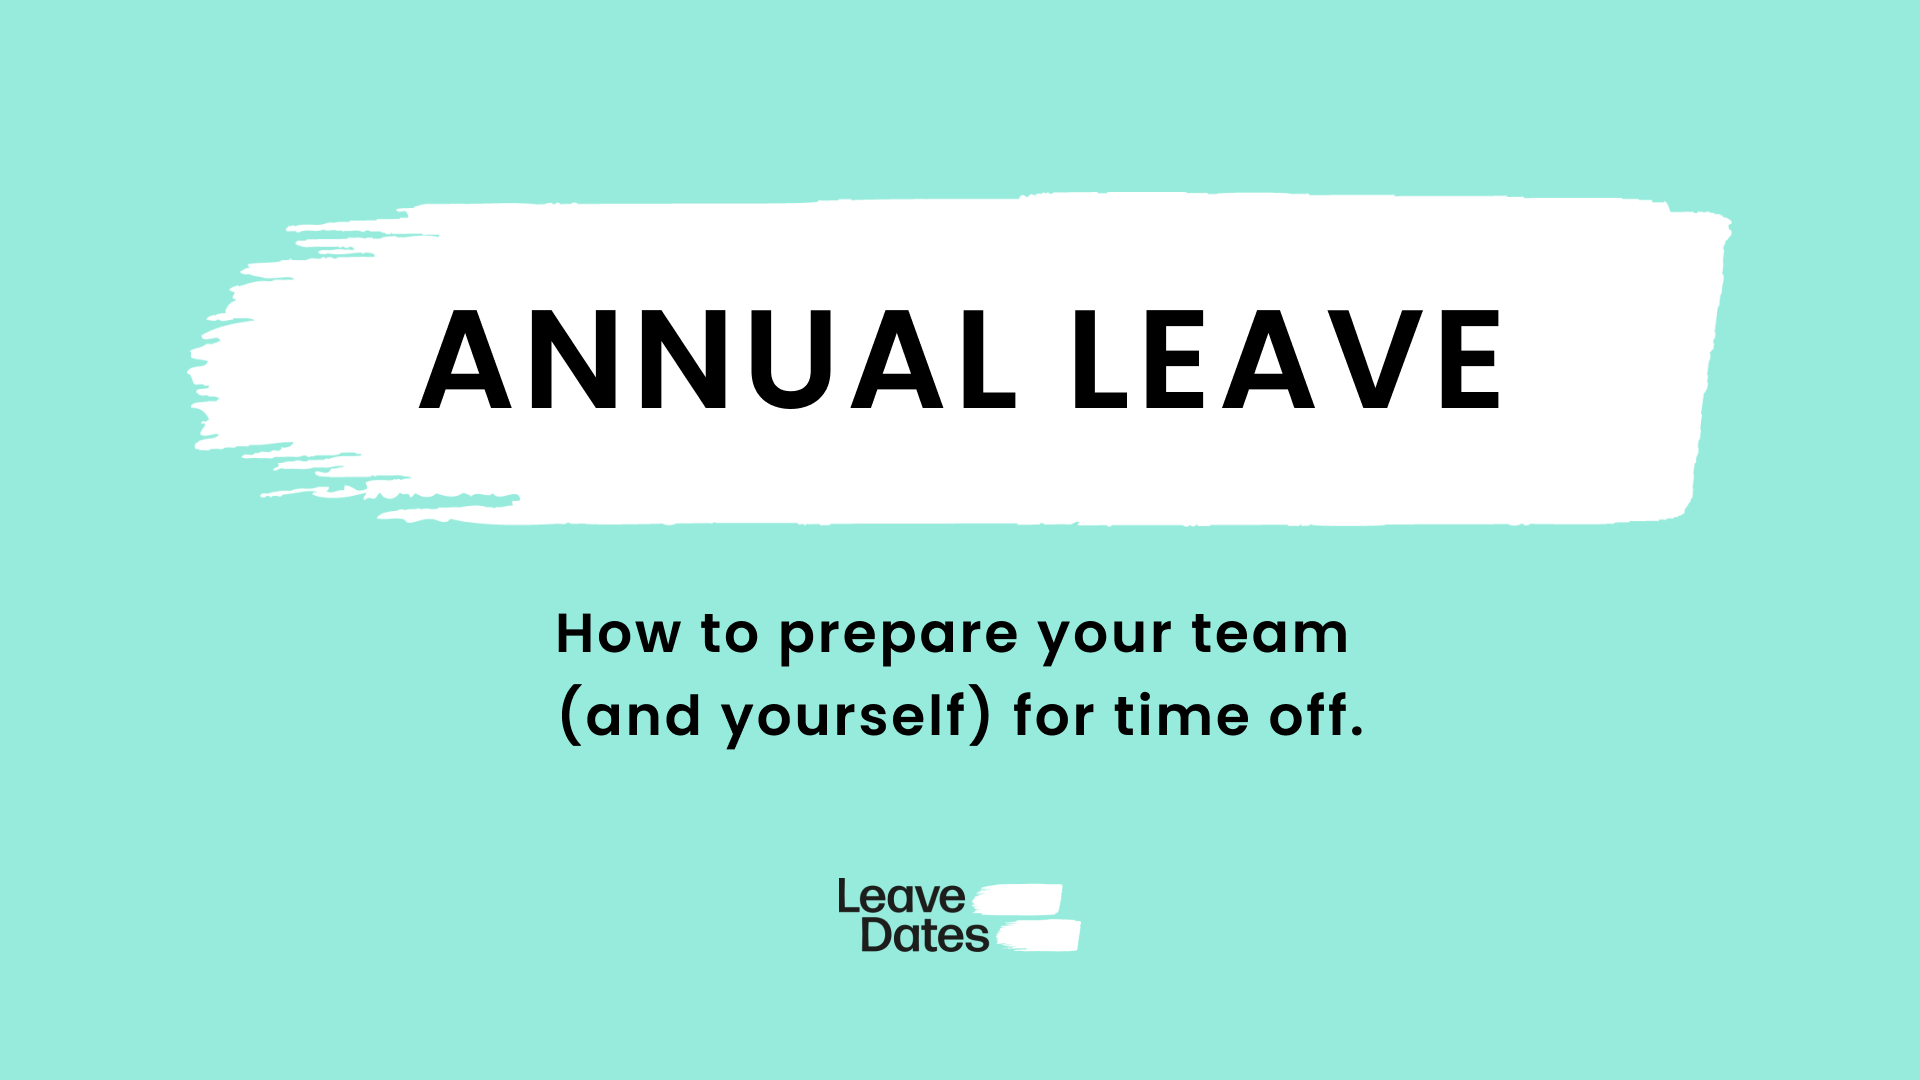 Prepare team for annual leave